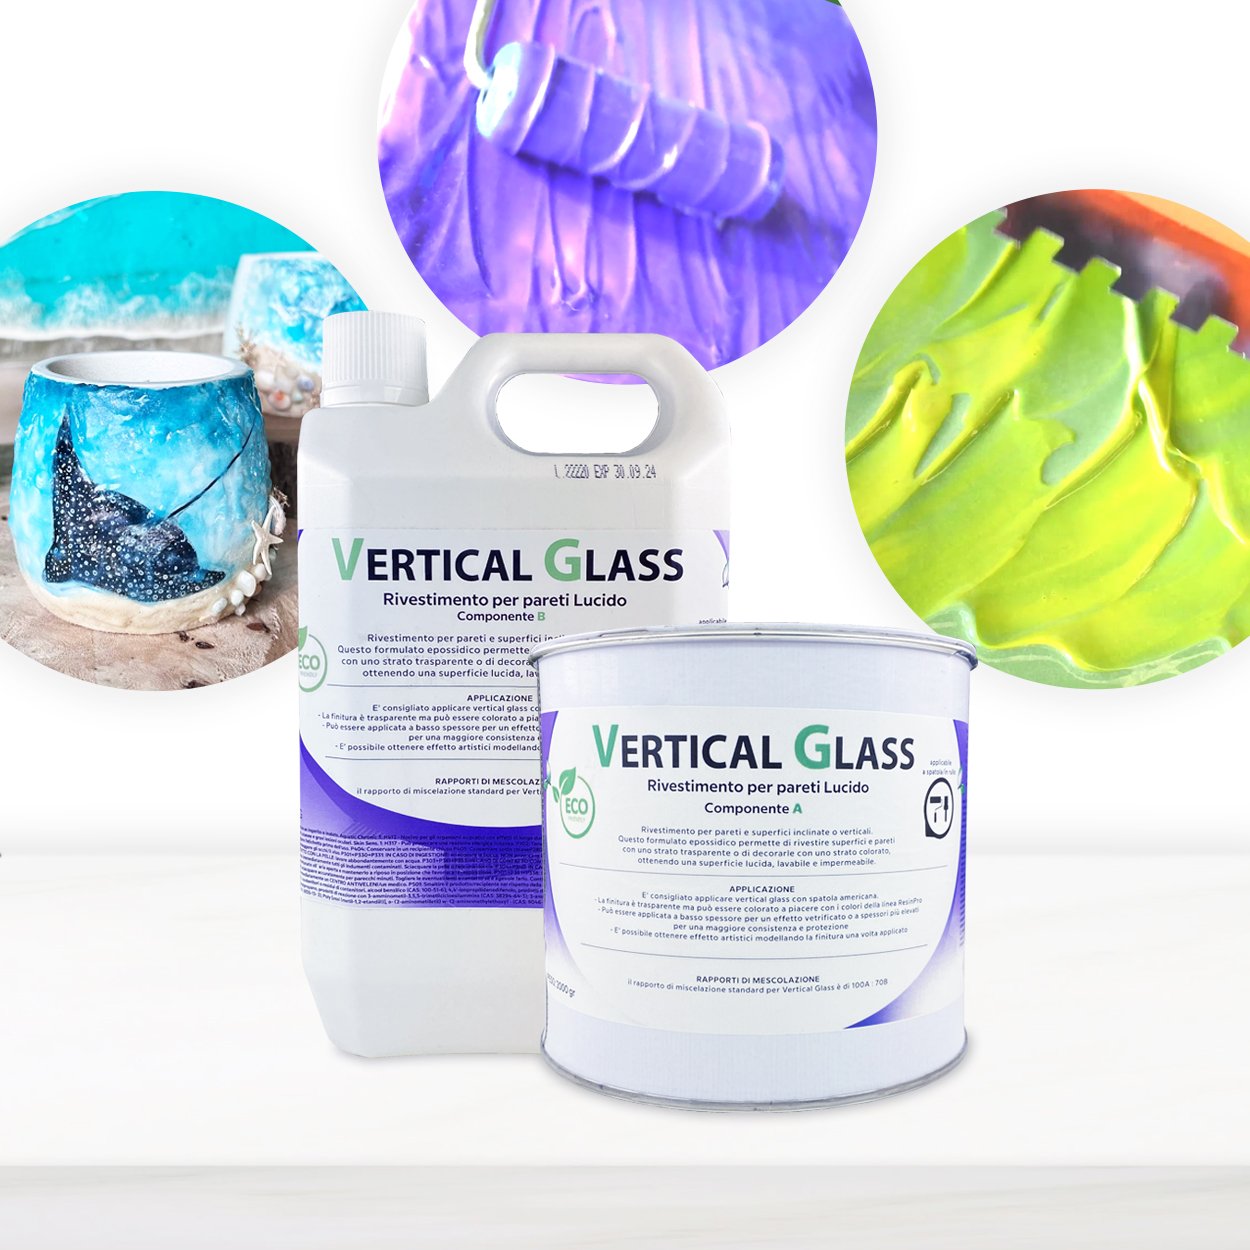 Resina para Artistas y Recubrimientos de Paredes y Superficies “VERTICAL GLASS” – Renovar, Proteger y Decorar